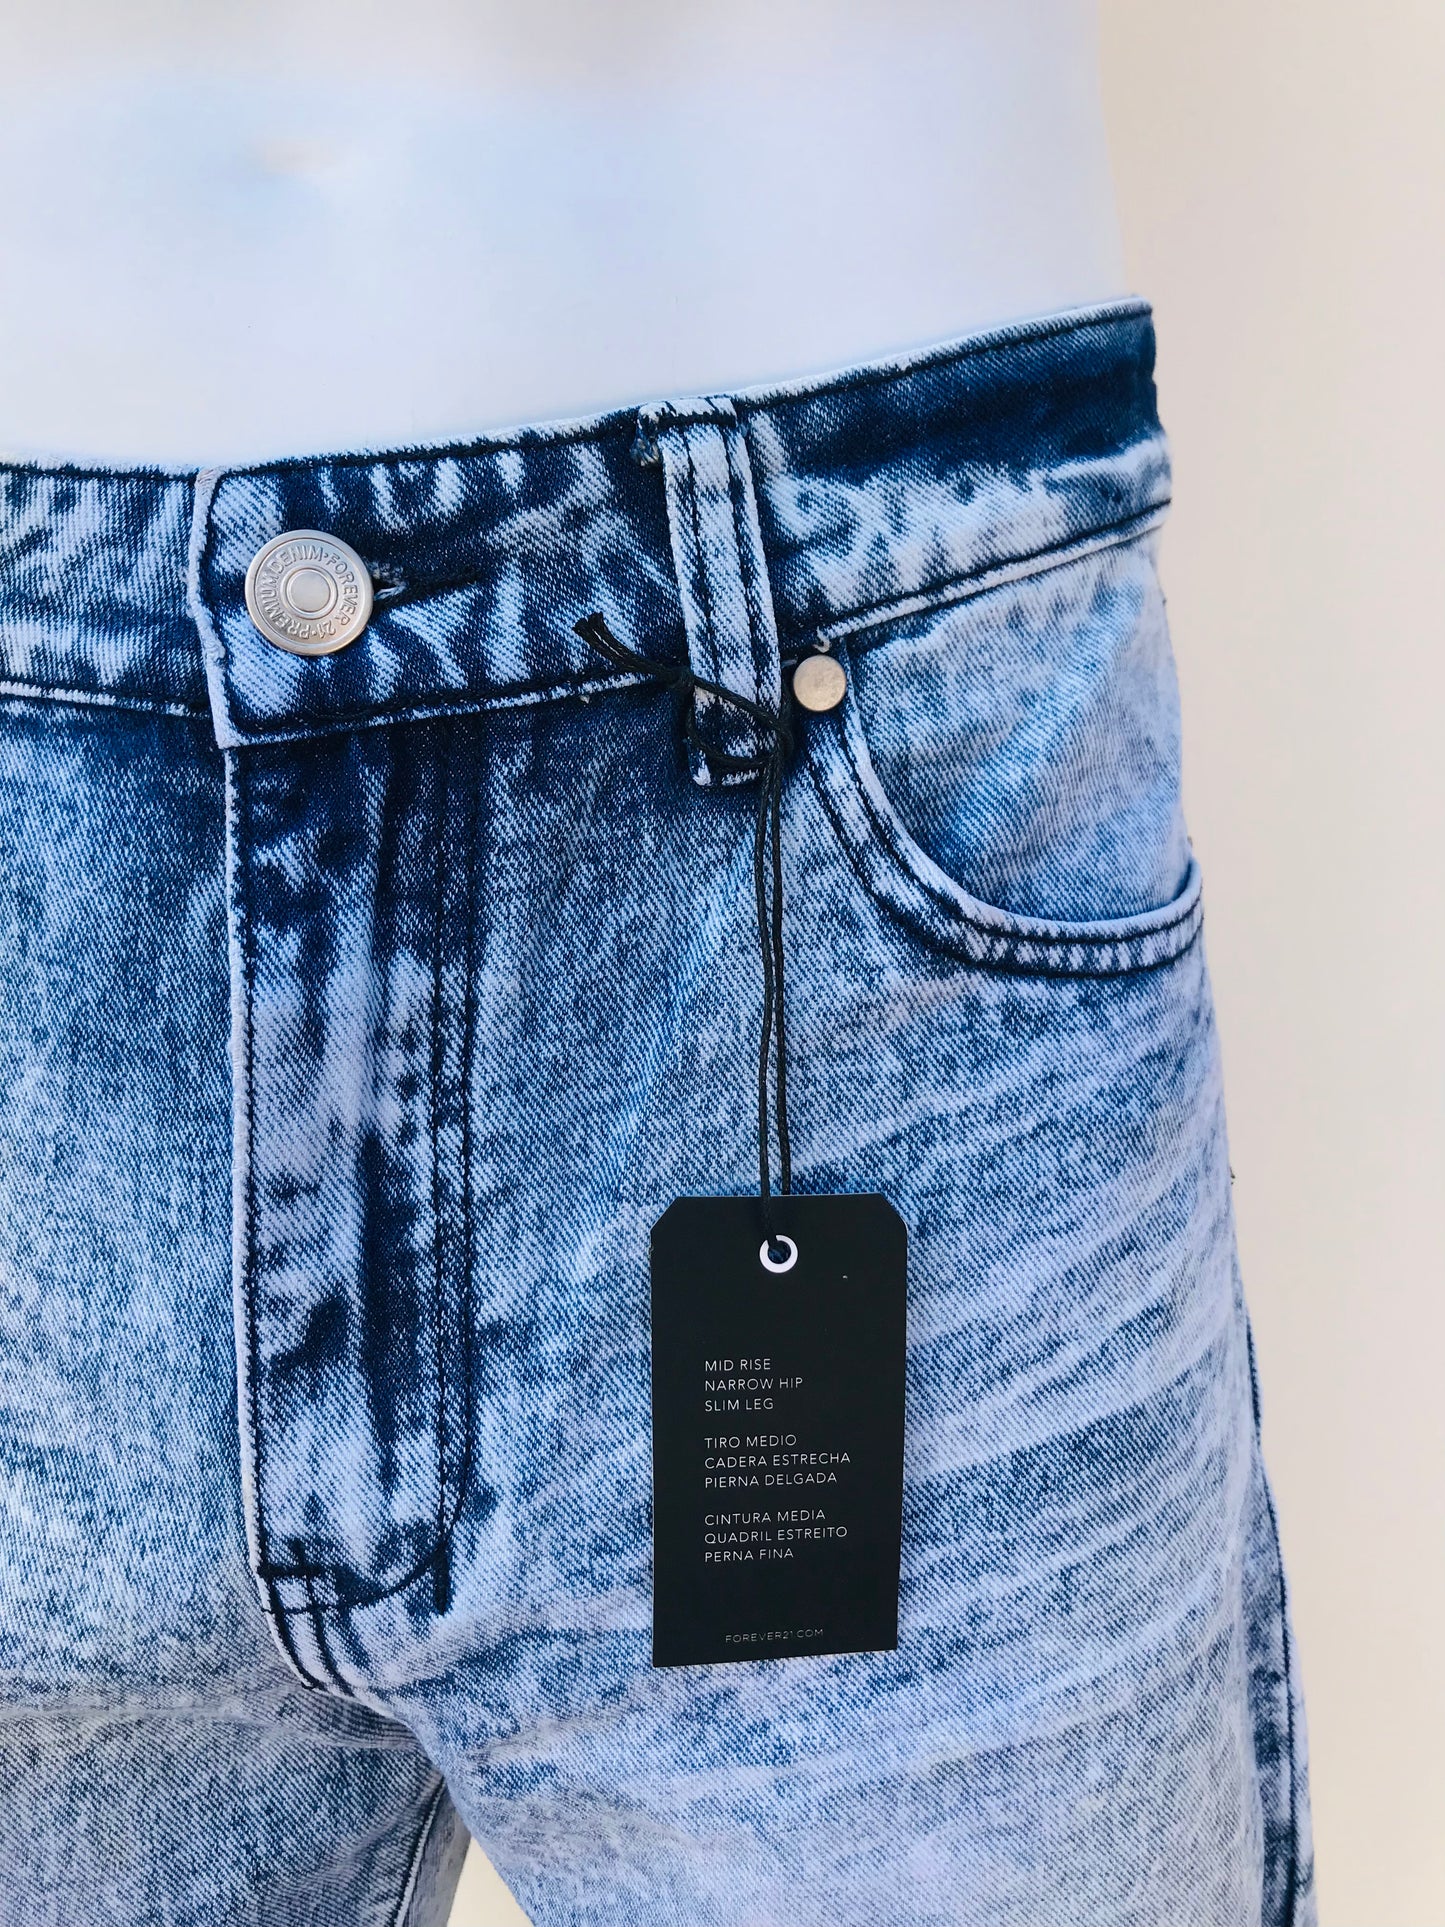 Bermuda FOREVER 21 original, jeans claro en degrado blanco sin ruedo.